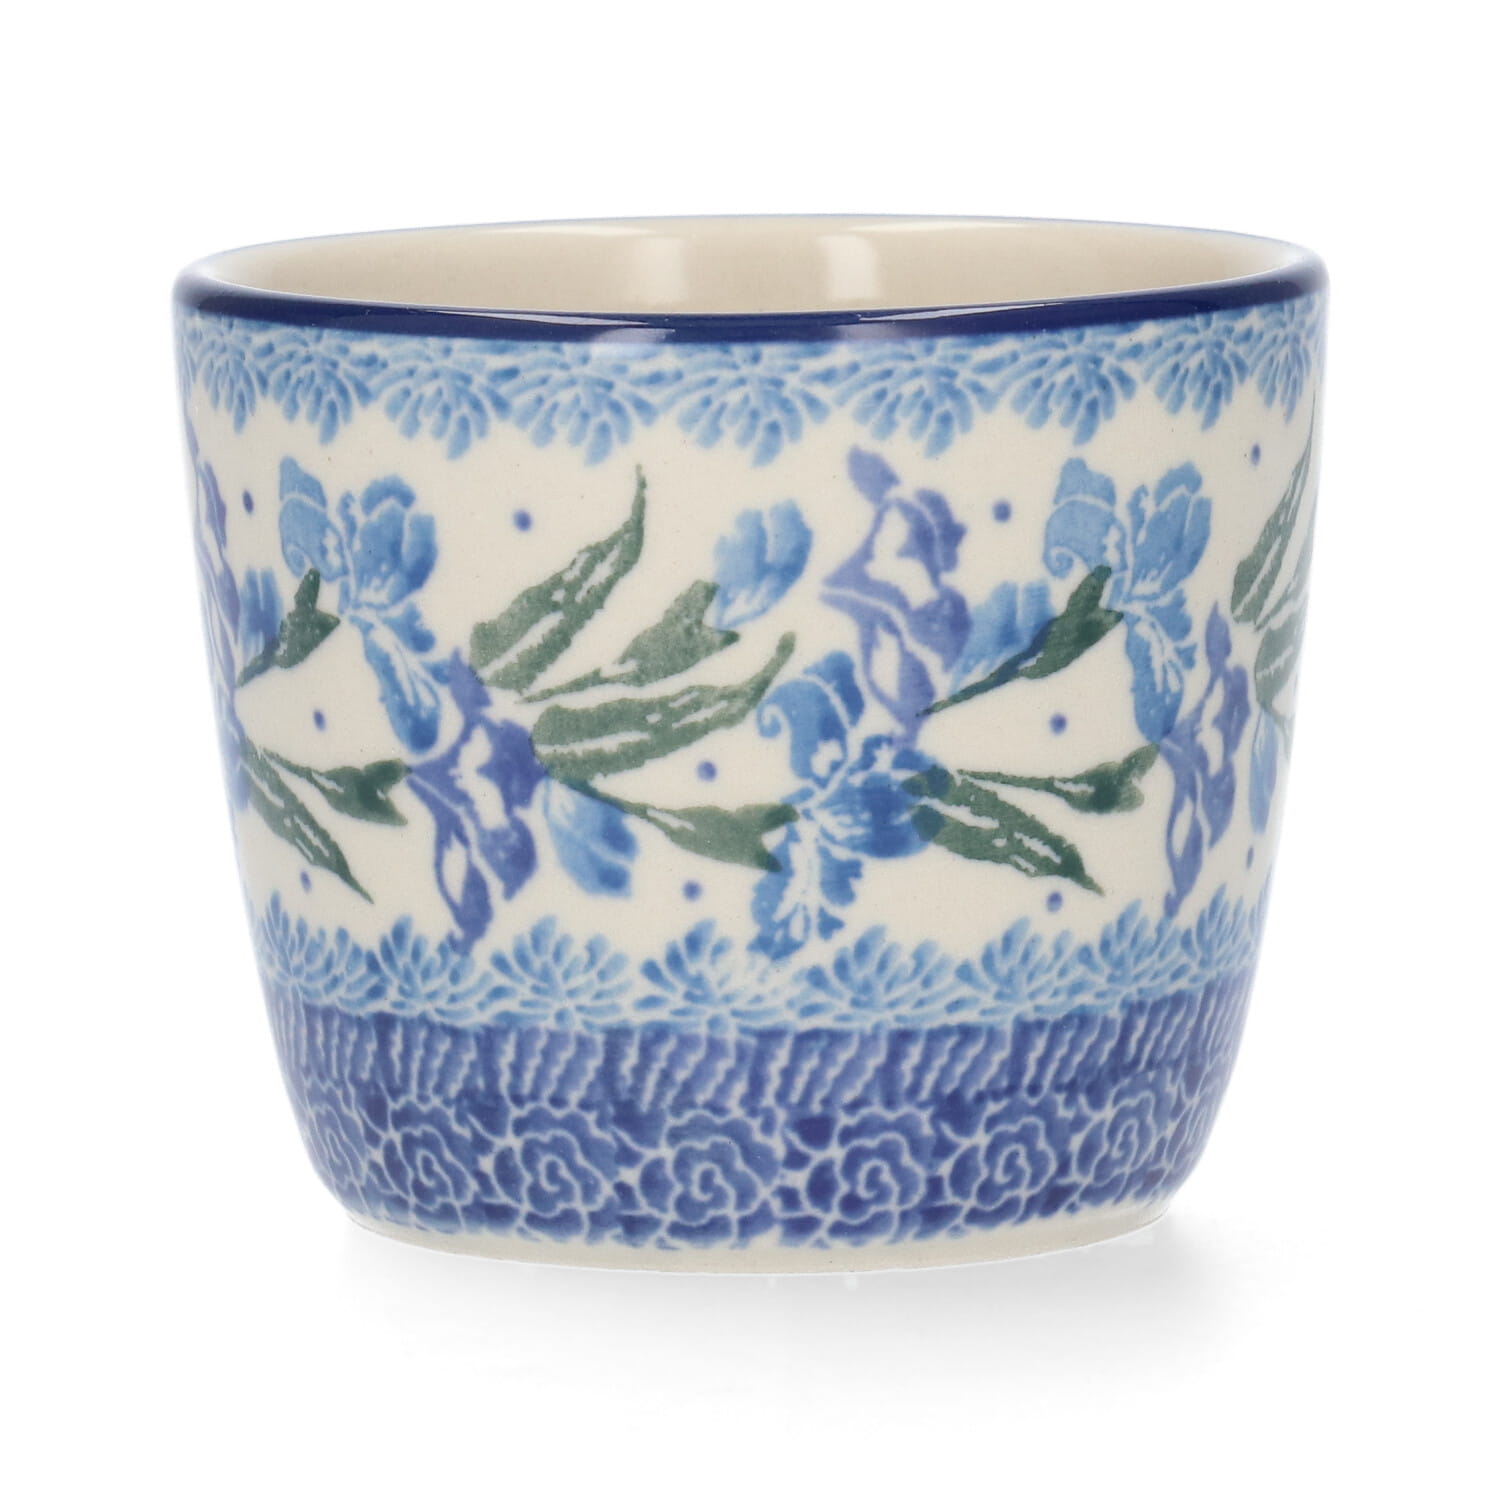 Bunzlau Castle Keramik Becher Tumbler 220 ml - van Gogh Irises